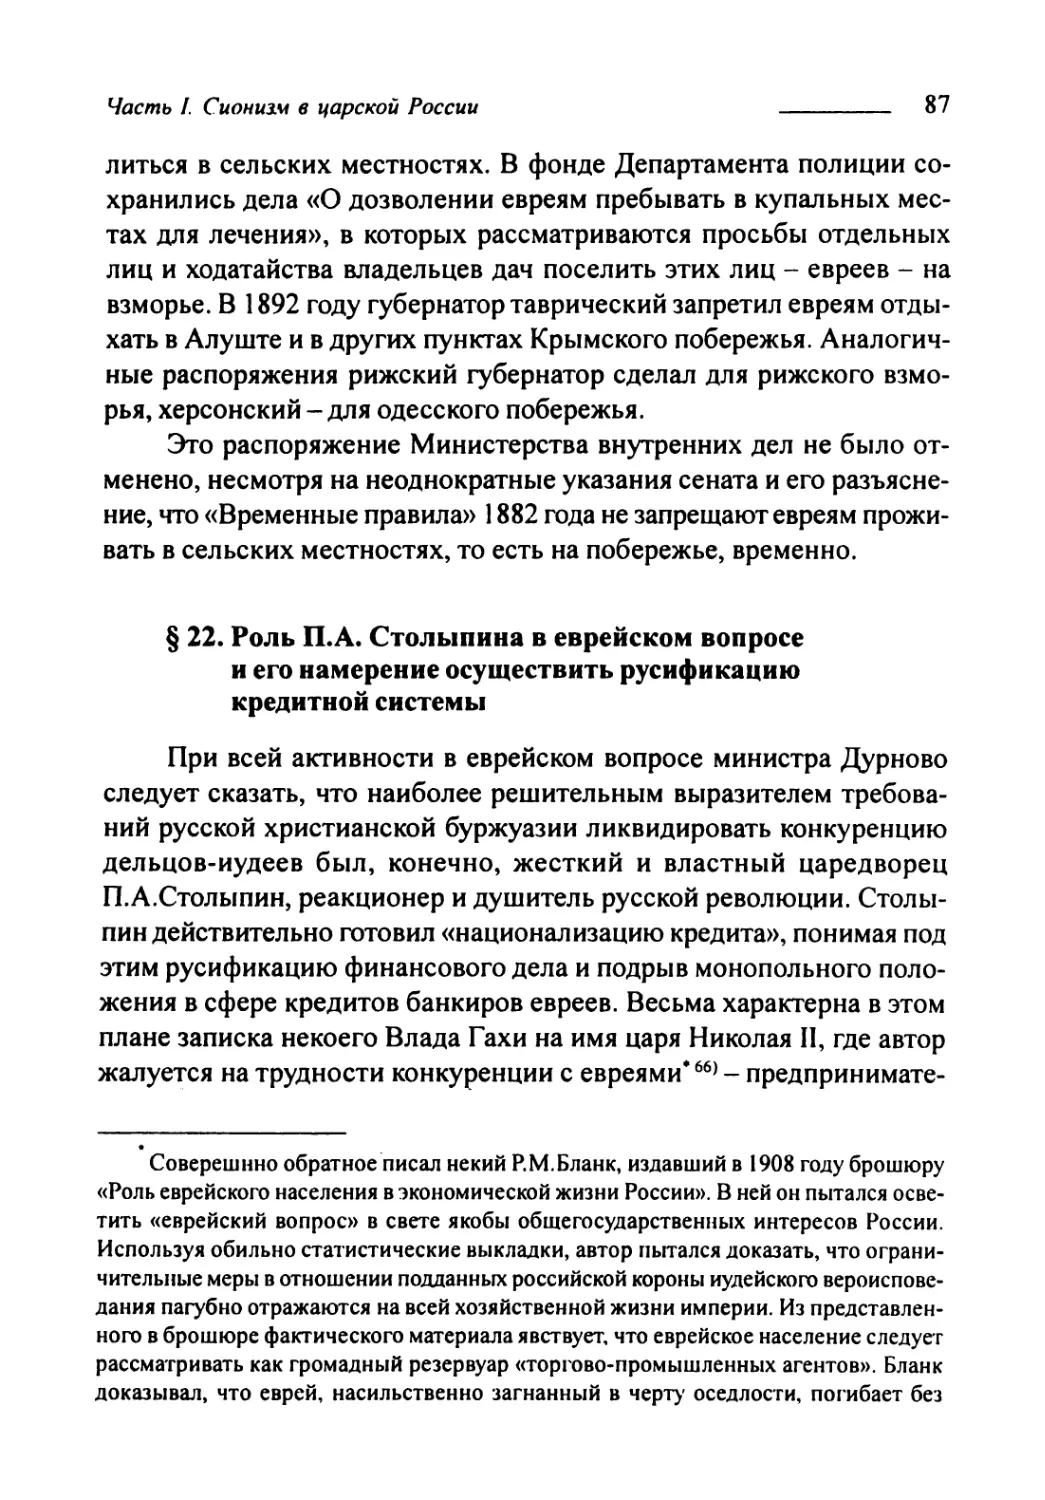 § 22. Роль П.А. Столыпина в еврейском вопросе и его намерение осуществить русификацию кредитной системы